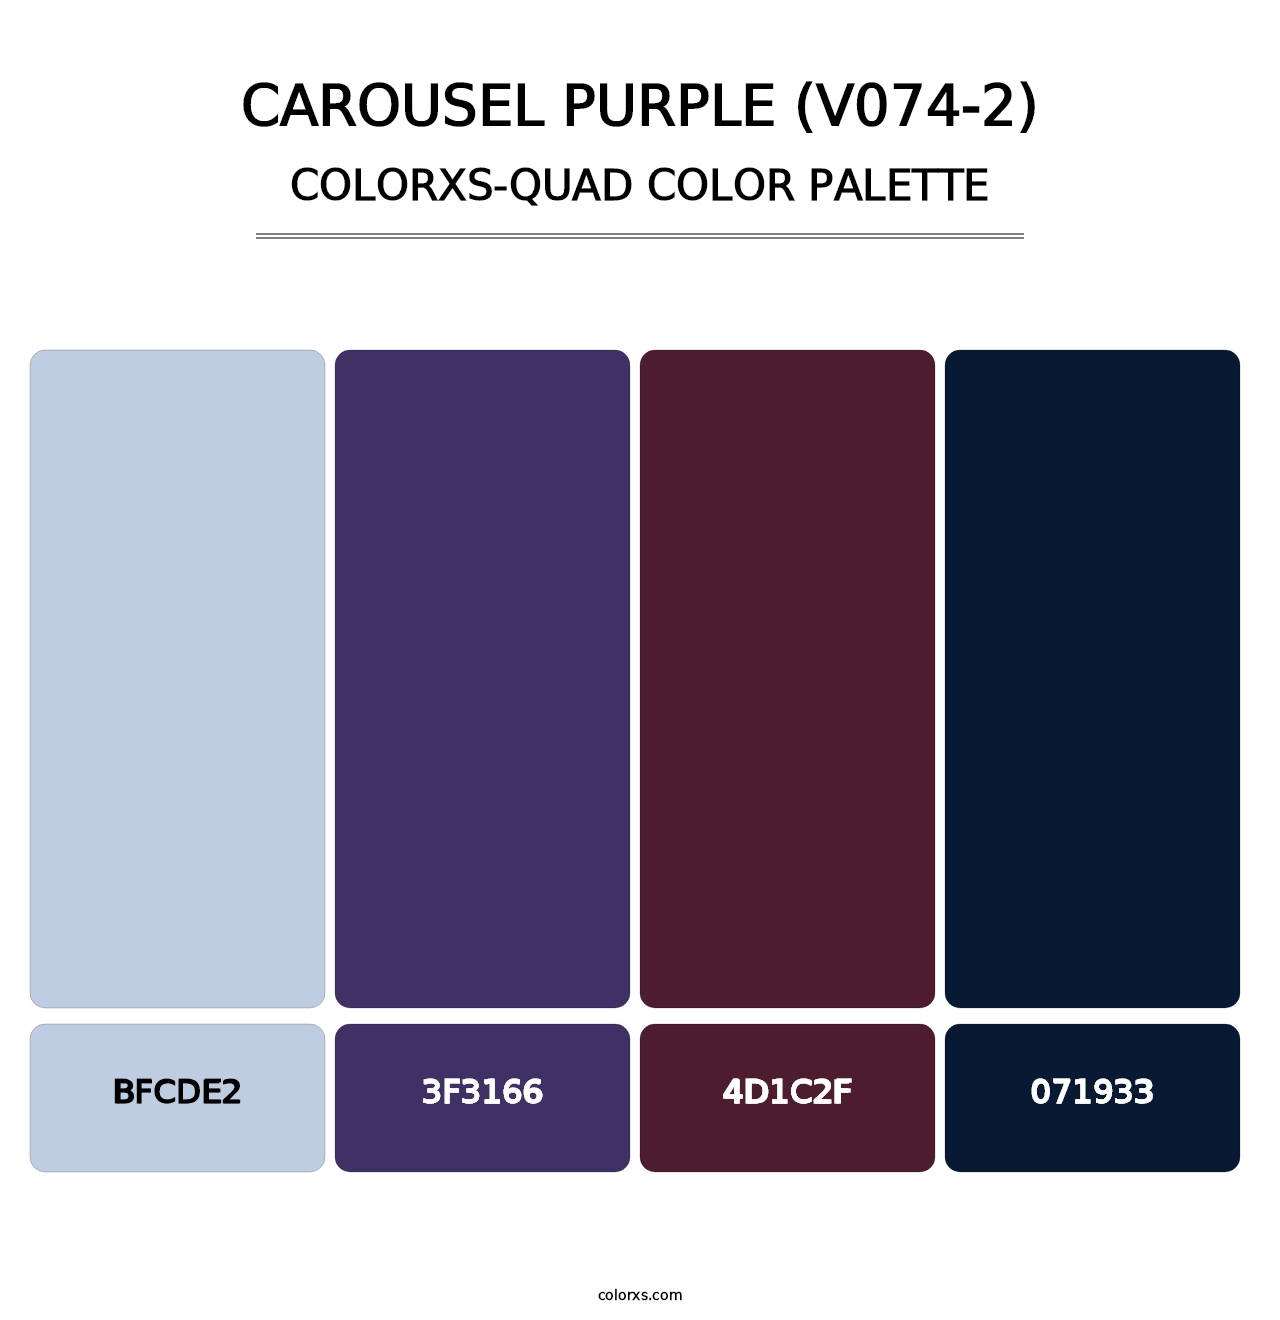 Carousel Purple (V074-2) - Colorxs Quad Palette